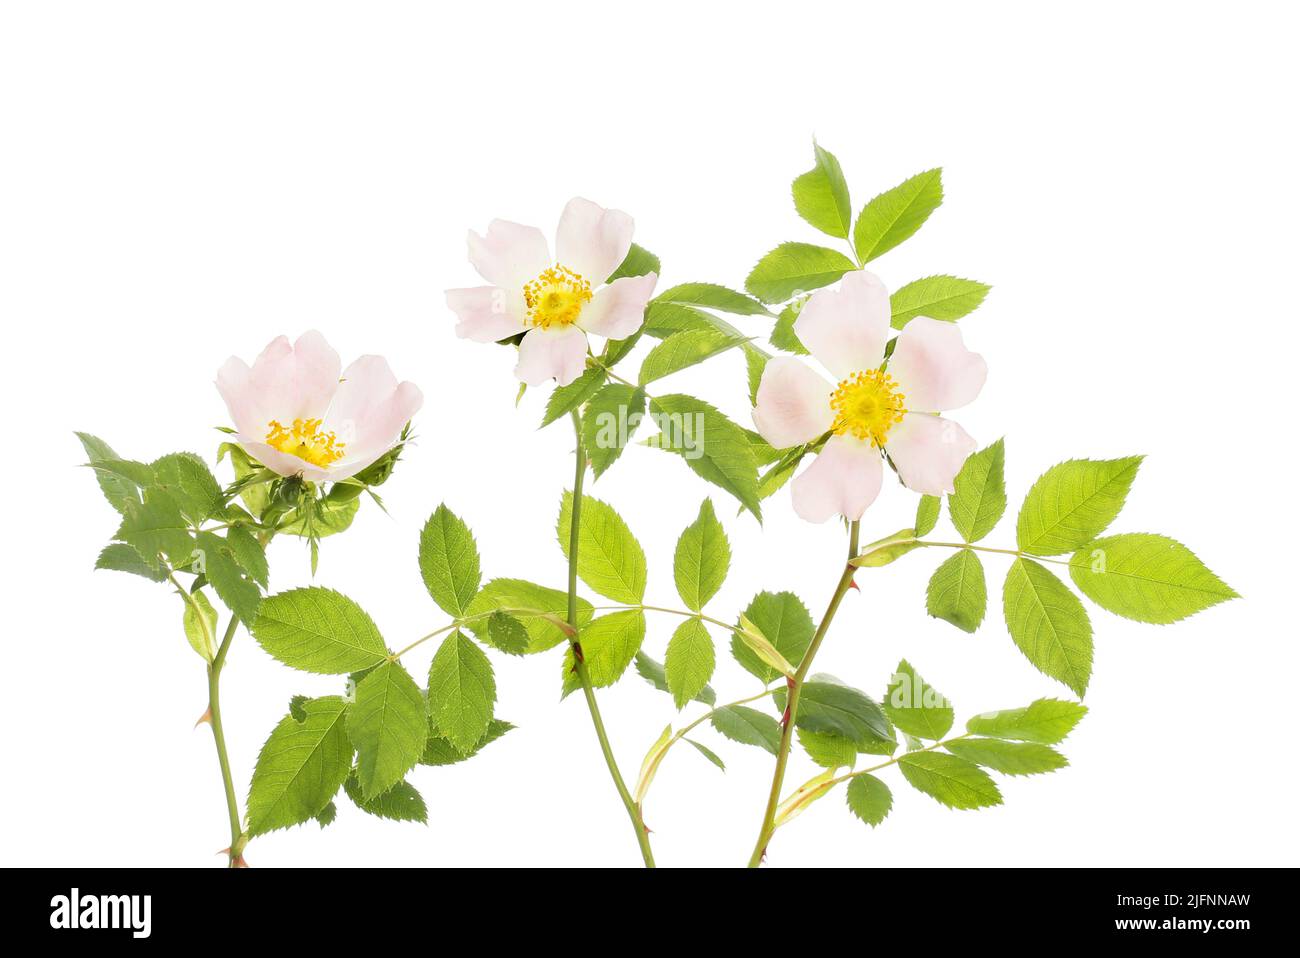 Rosa de los perros, rosa canina, flores y follaje aislado contra blanco Foto de stock